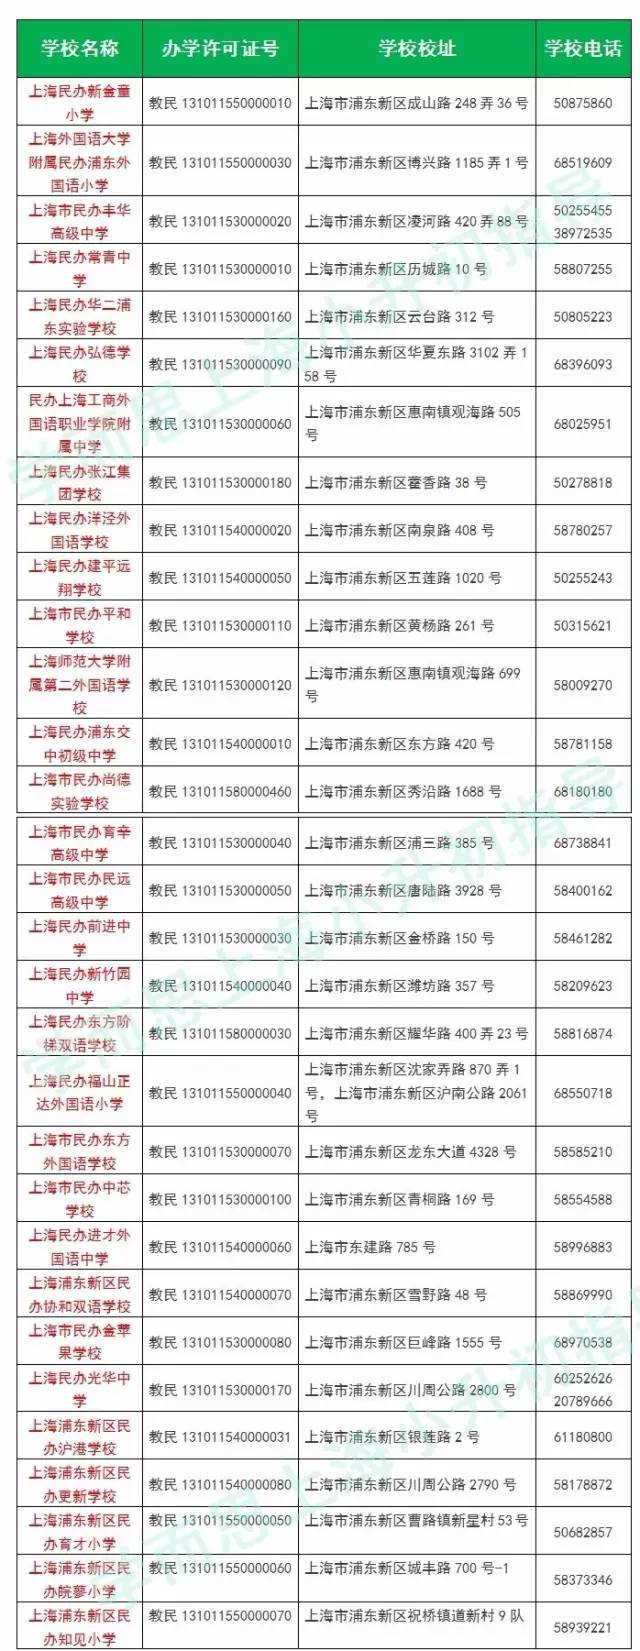 2017上海小学之浦东新区正规民办中小学名单